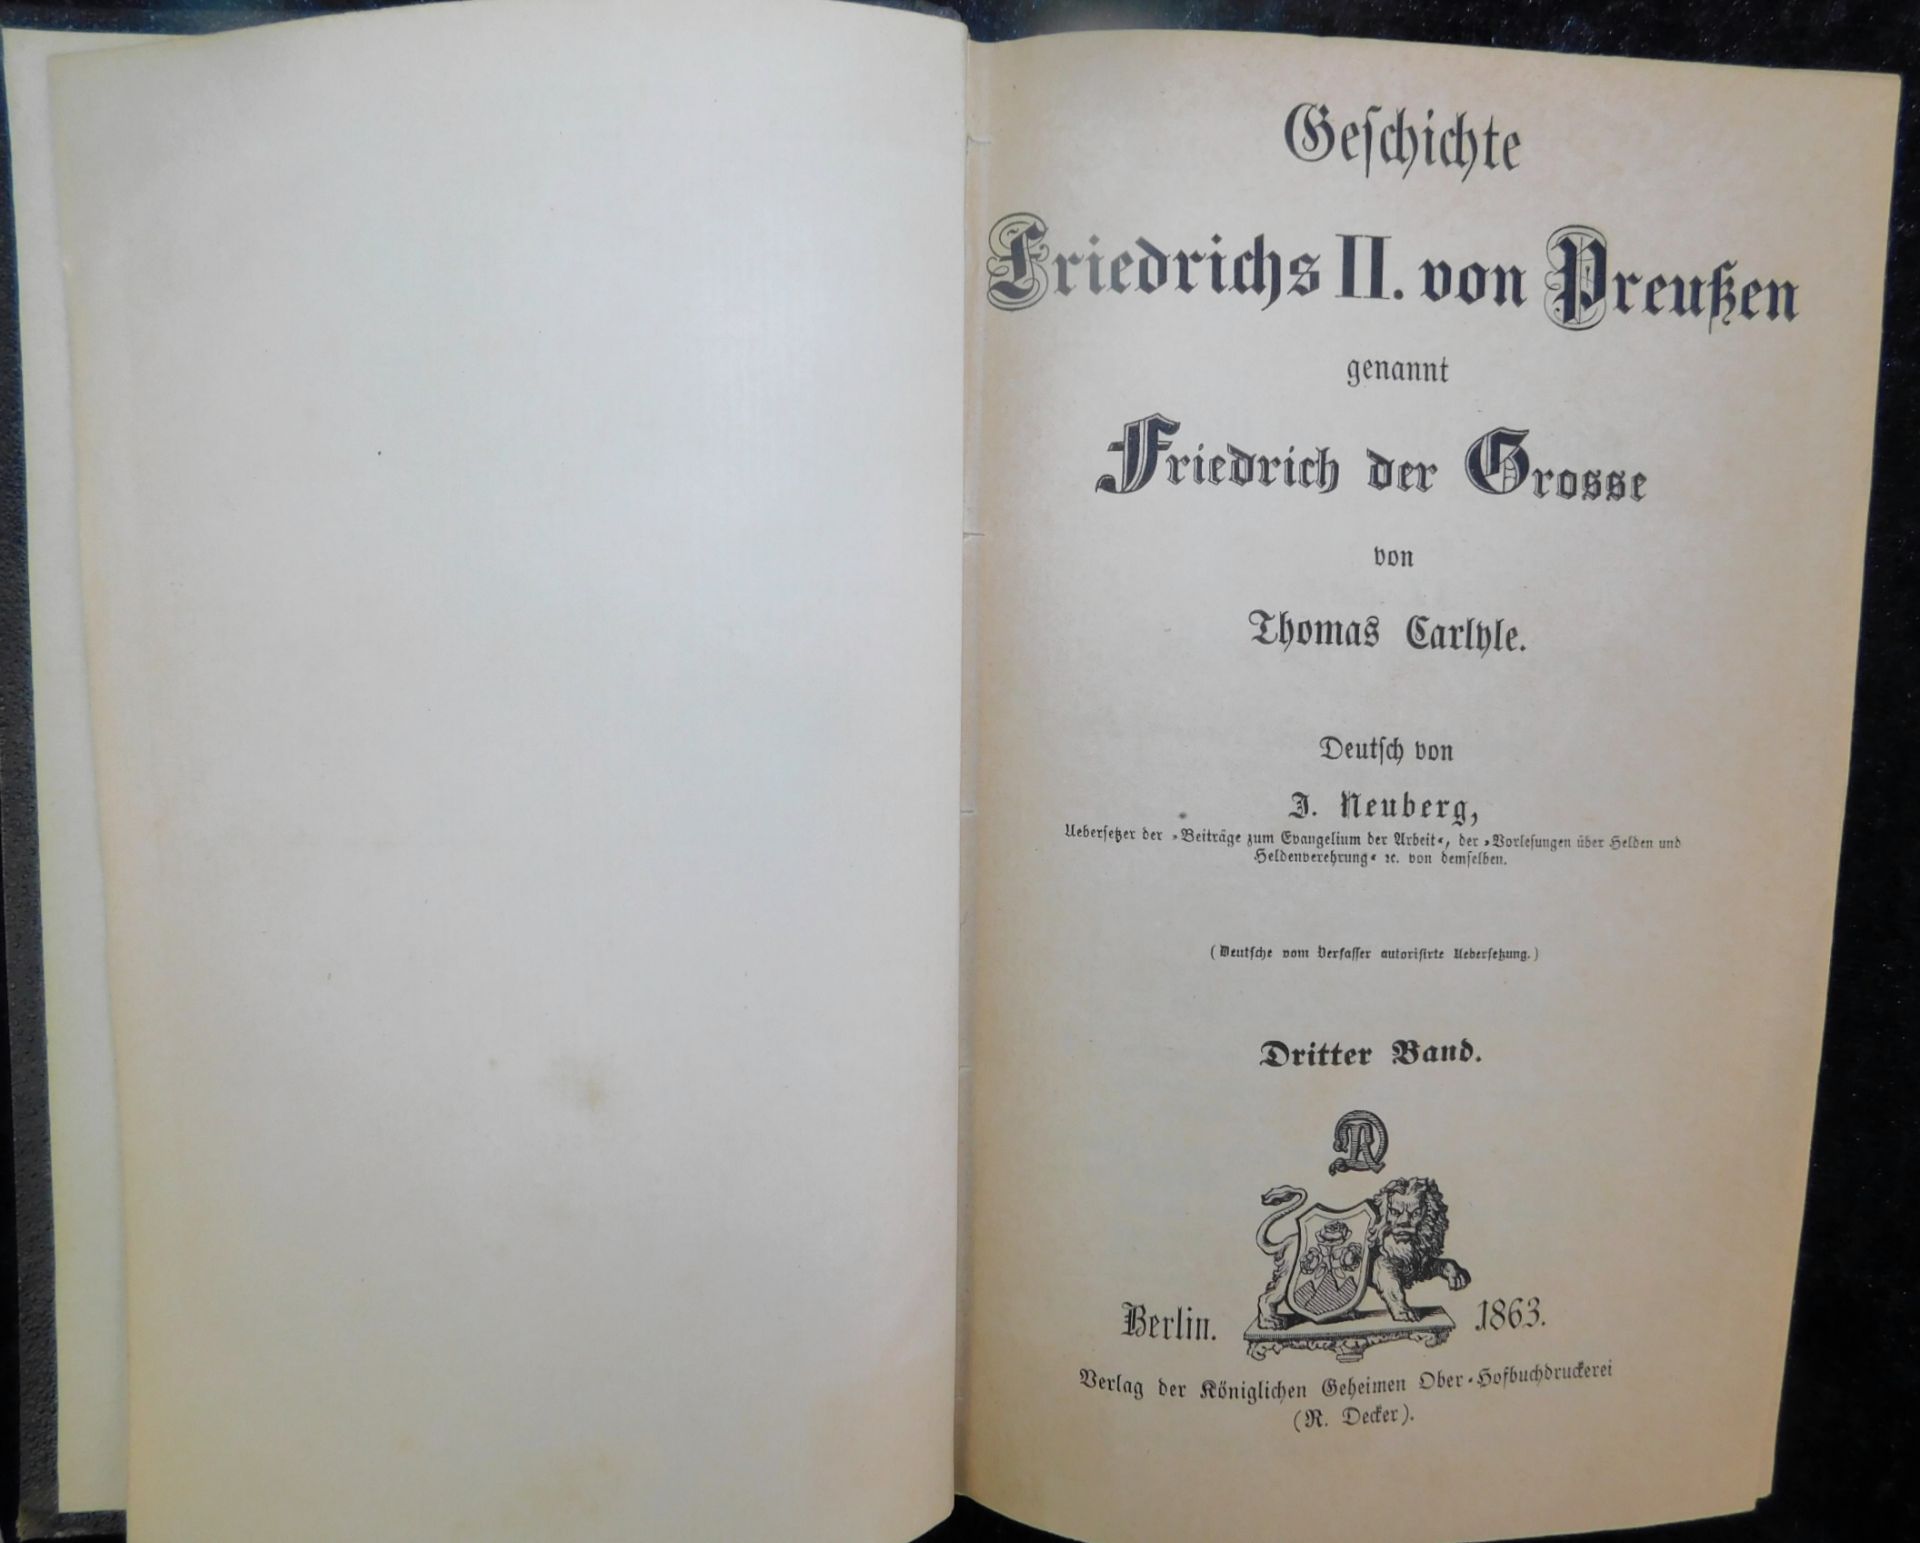 Friedrich der Große, In 5 Bänden, Thomas Carlyle, Deutsch von J. Neuberg, Verlag R. Decker, Berlin 1 - Image 4 of 6